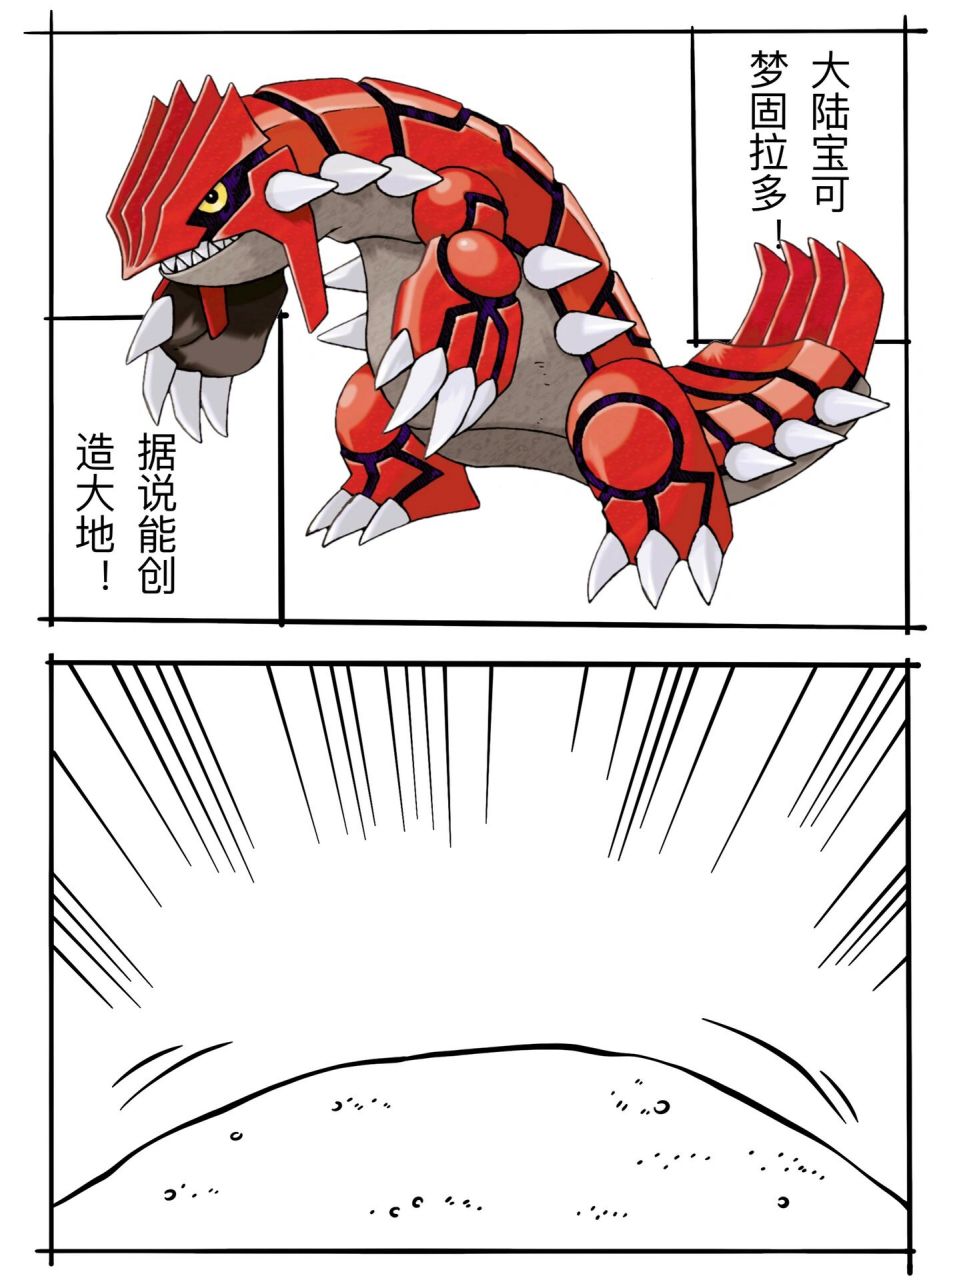 固拉多 pokemon哲学漫画  大陆宝可梦 高3